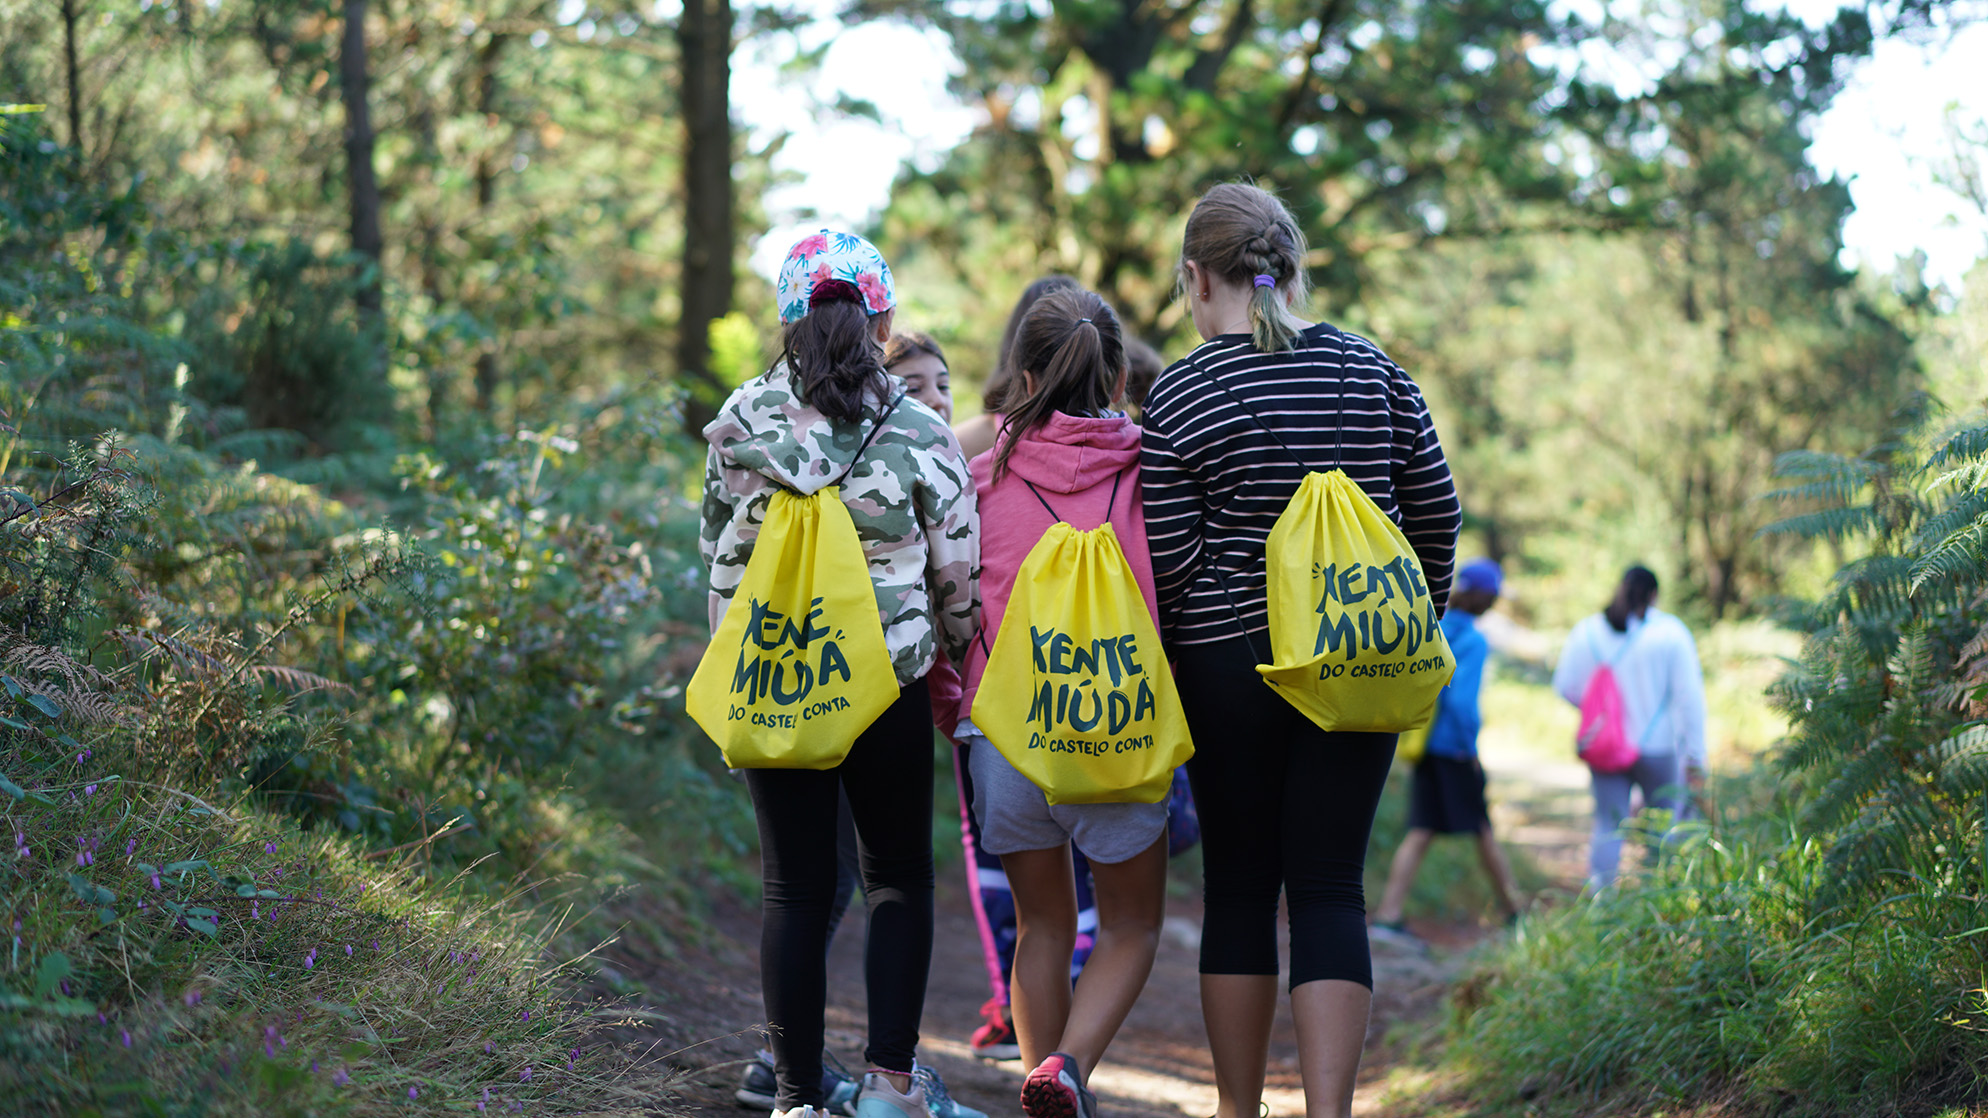 Tres nenas camiñando polo monte Xalo con mochilas rotuladas co logo de Xente Miúda, durante o Castelo Conta do 2019